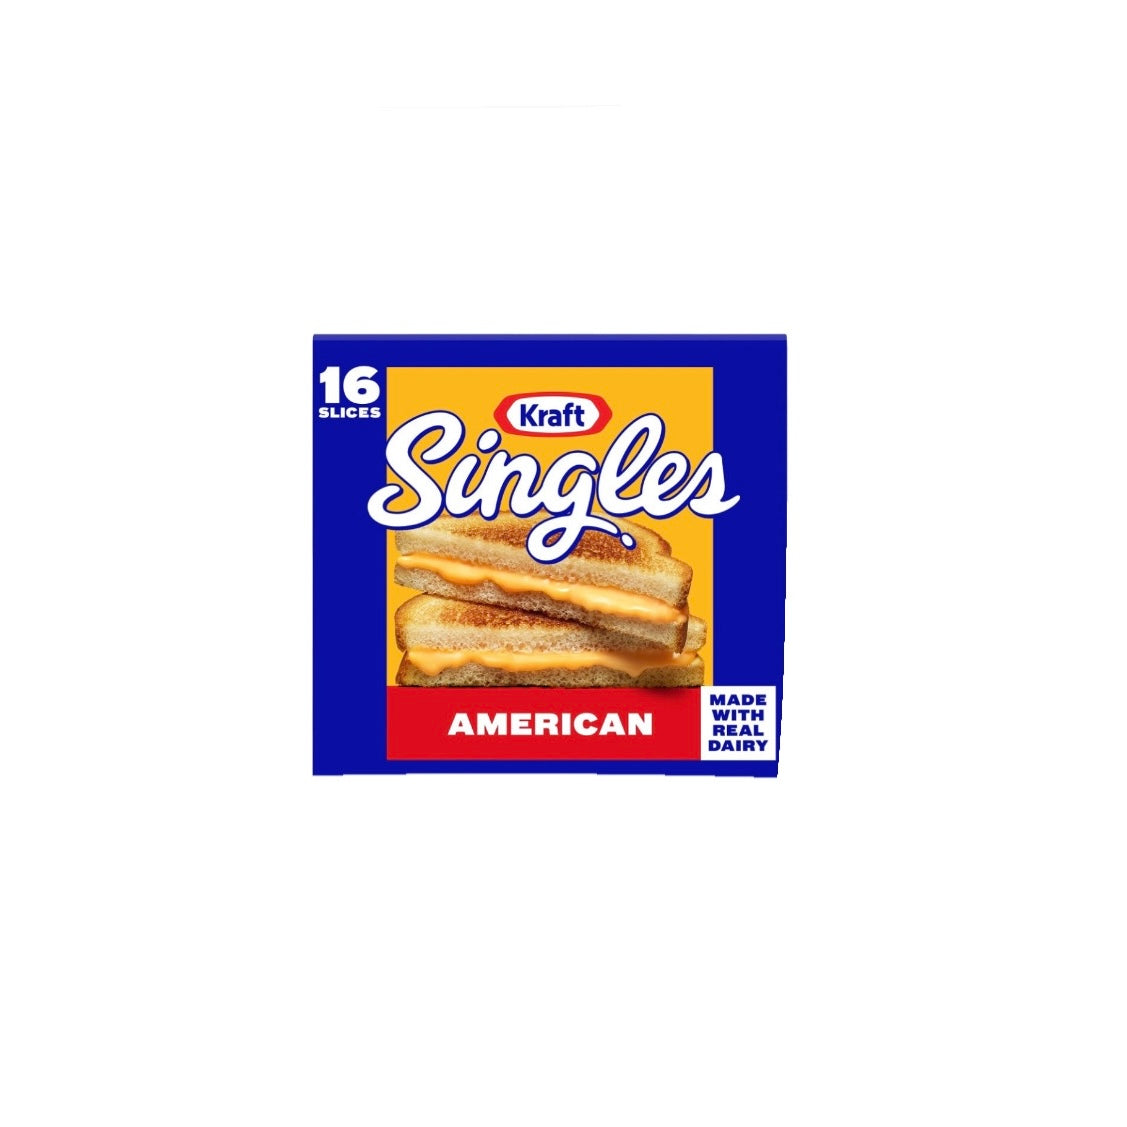 Kraft Singles American Cheese 16 slices/12 oz (EKR96800)